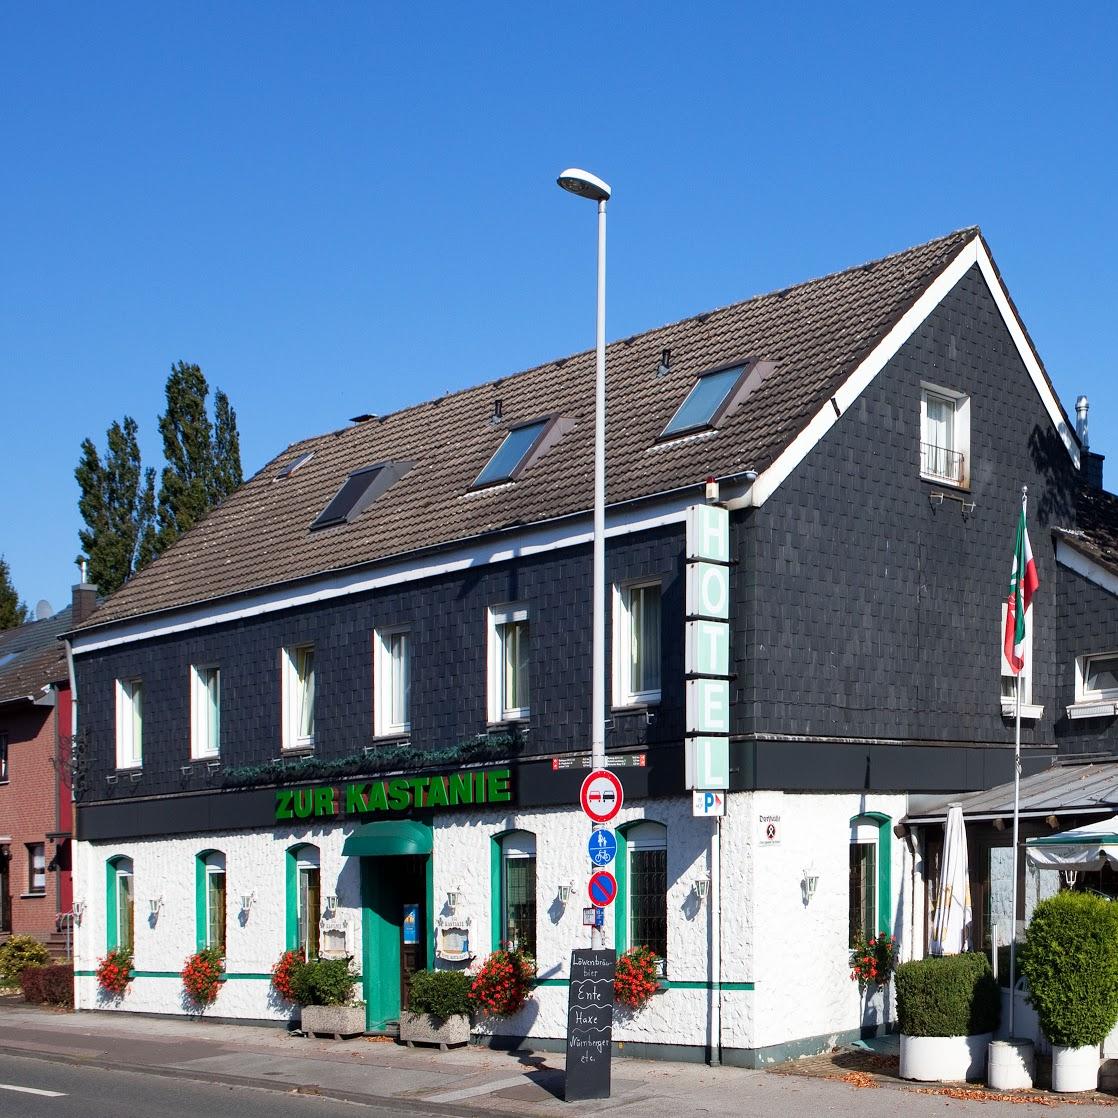 Restaurant "Hotel Zur Kastanie" in Mülheim an der Ruhr